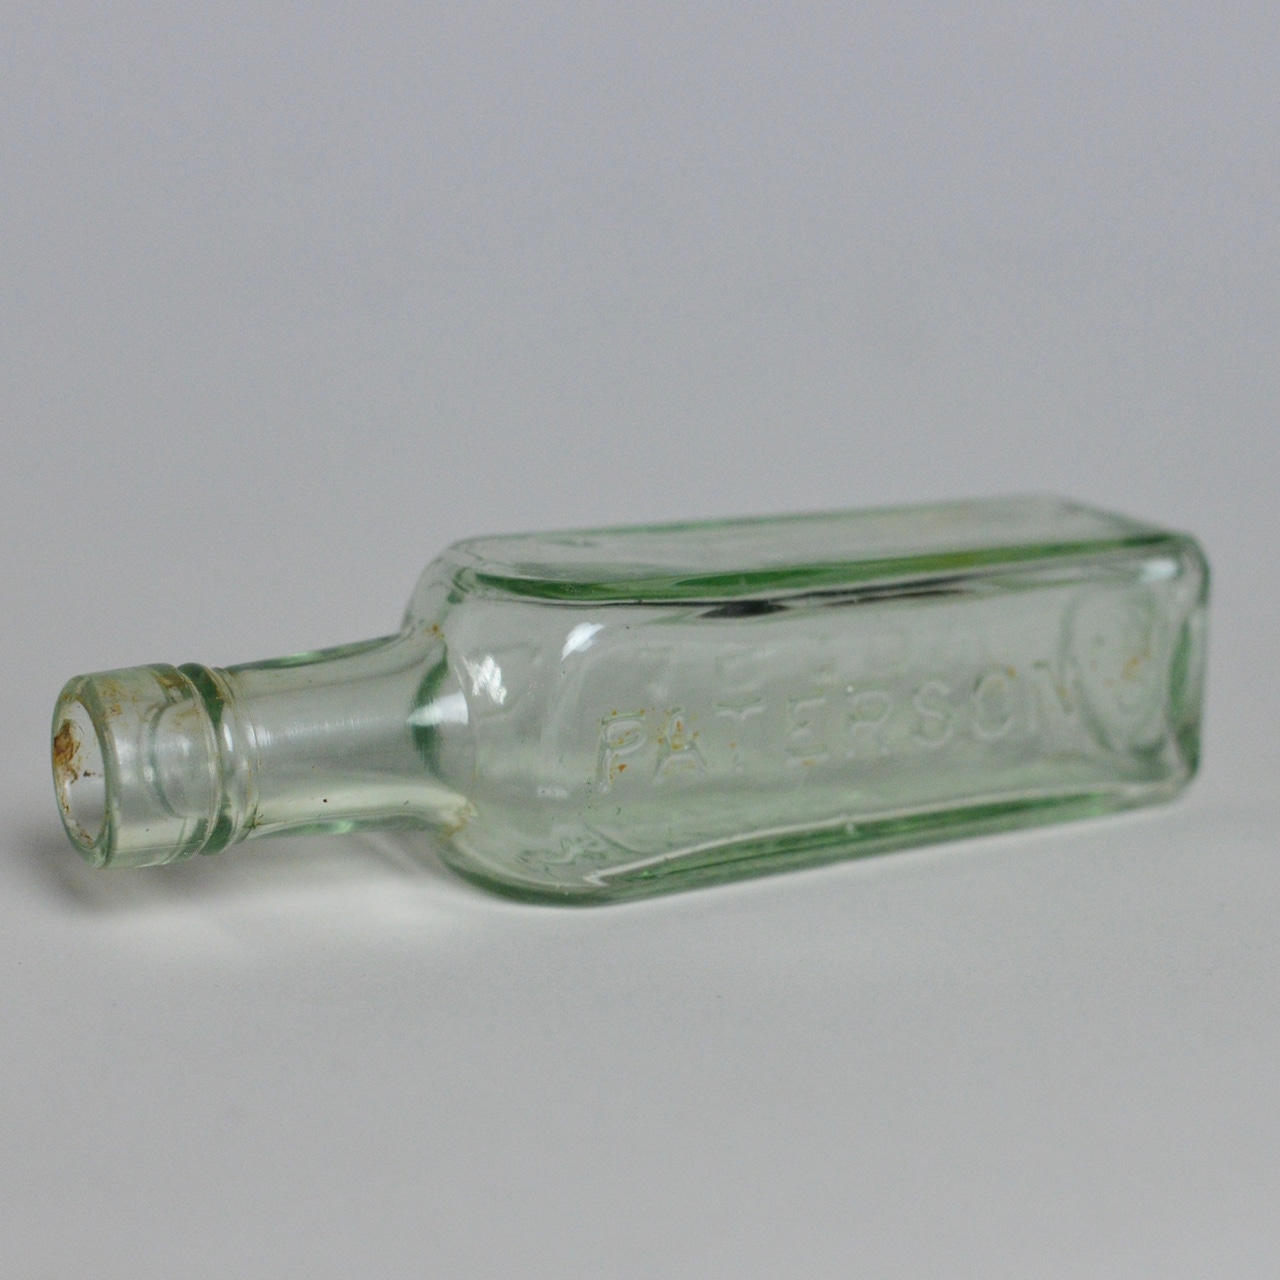 Bottle / ボトル〈花瓶 / フラワーベース / 一輪挿し〉 SB2012-0006B